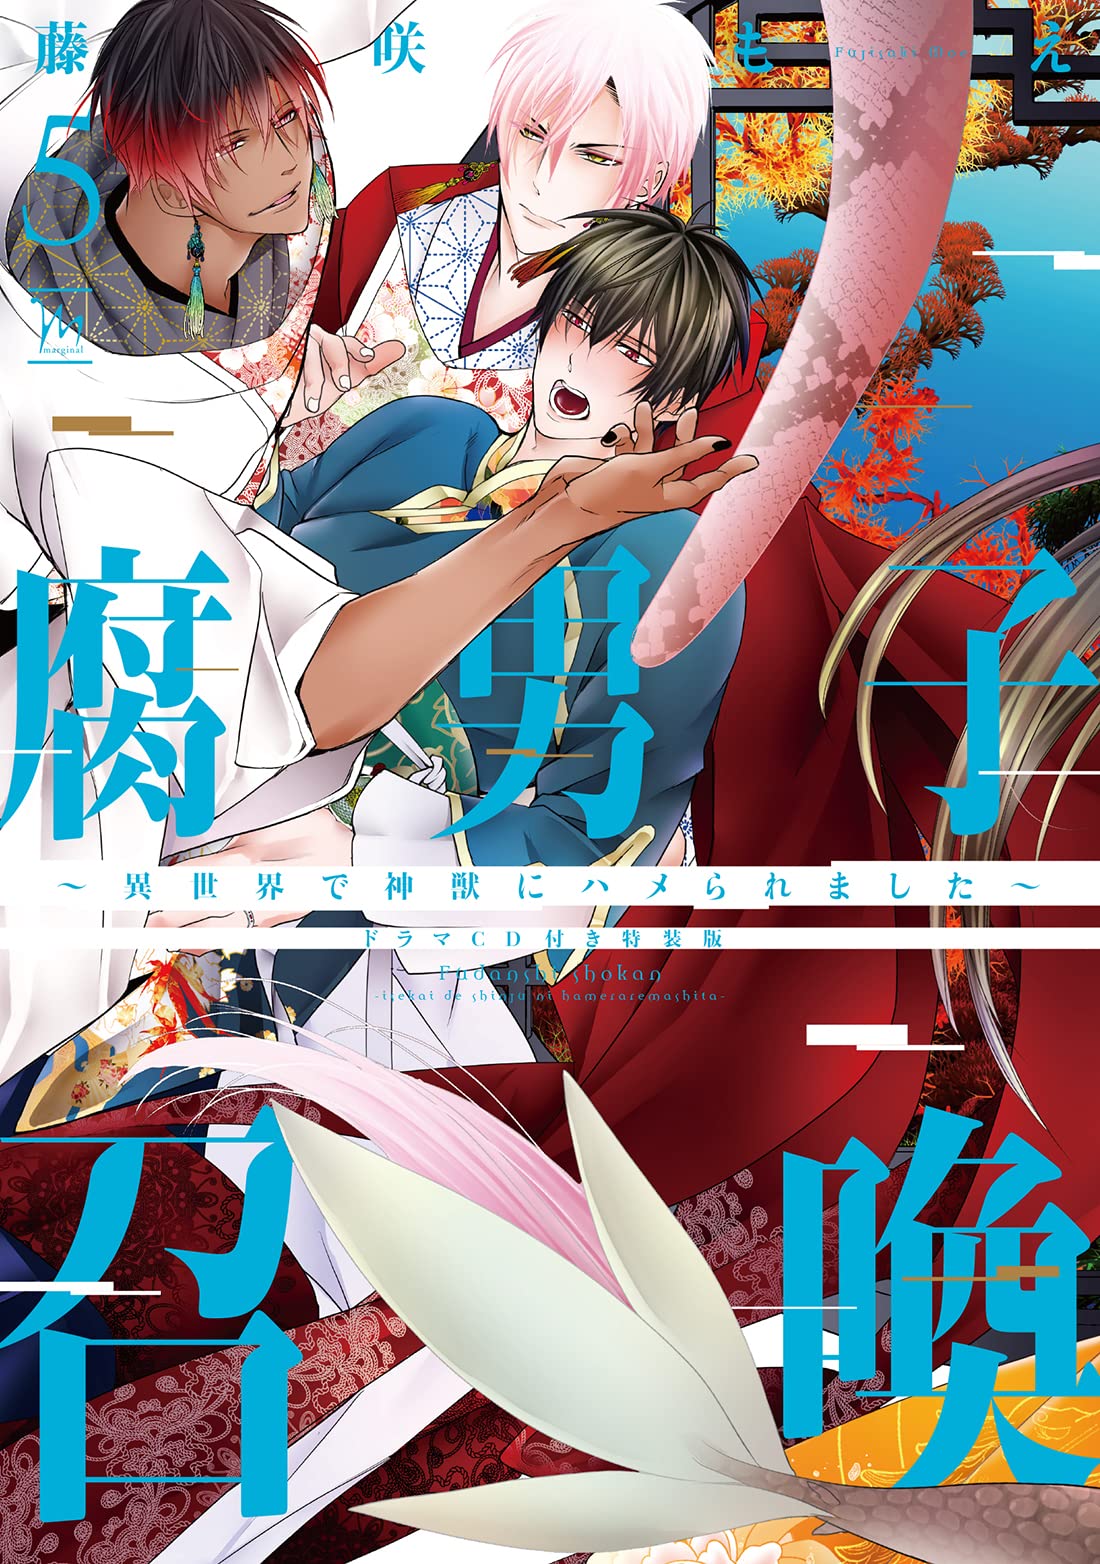 Sala Yaoi 801 e Yuri - A lógica fujoshi/fudanshi/fujin: são dois personagens  masculinos interagindo É ship! anime: Death_Parade ep.10